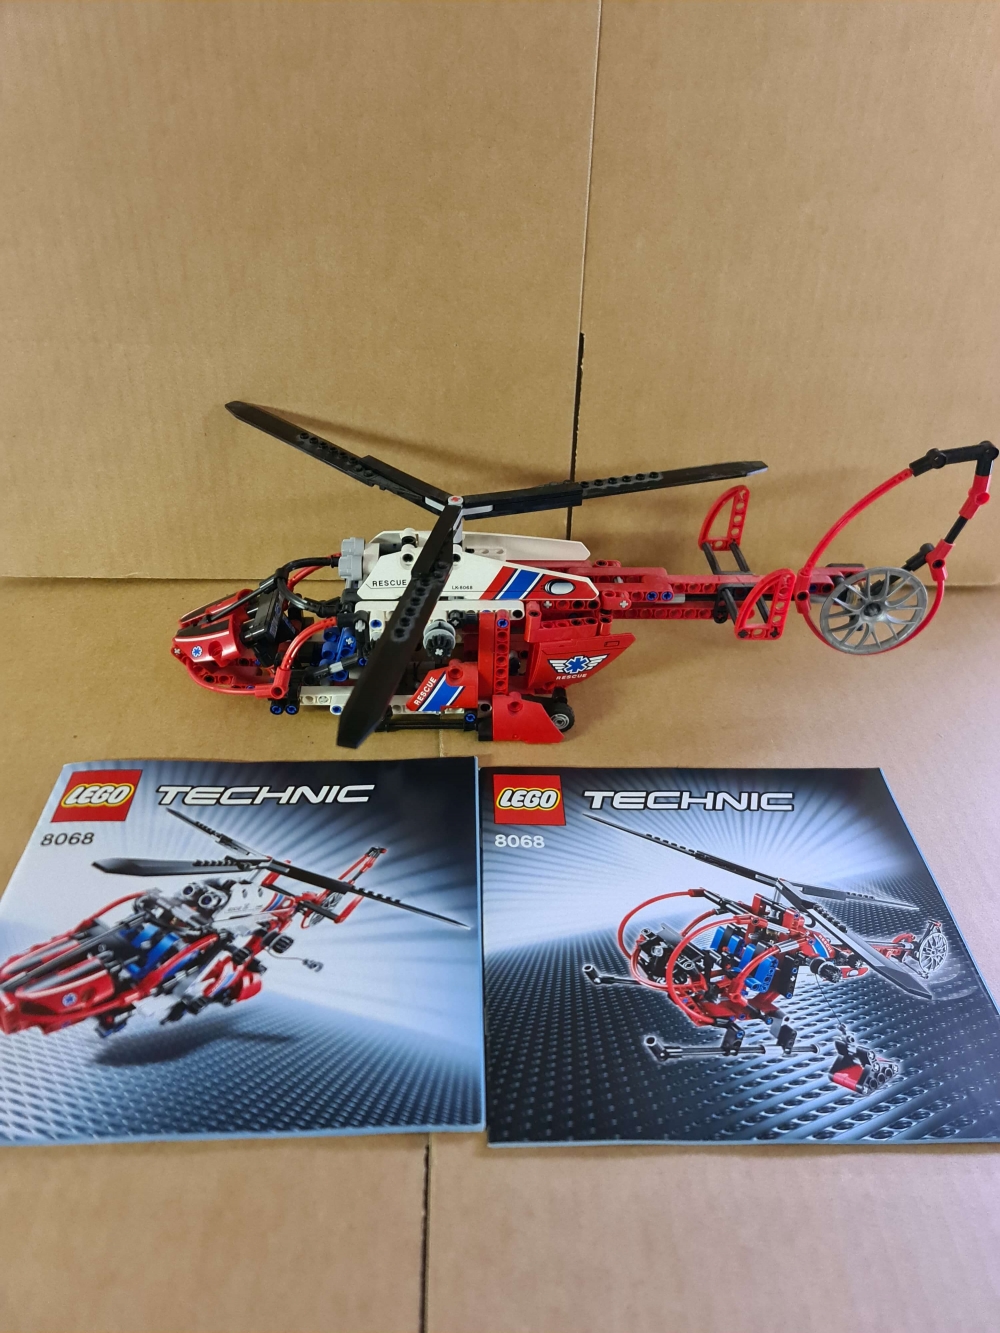 Sett 8068 fra Lego Technic serien.
Flott sett. Komplett med manualer. 
Alle deler er med slik at alternative modeller kan bygges.